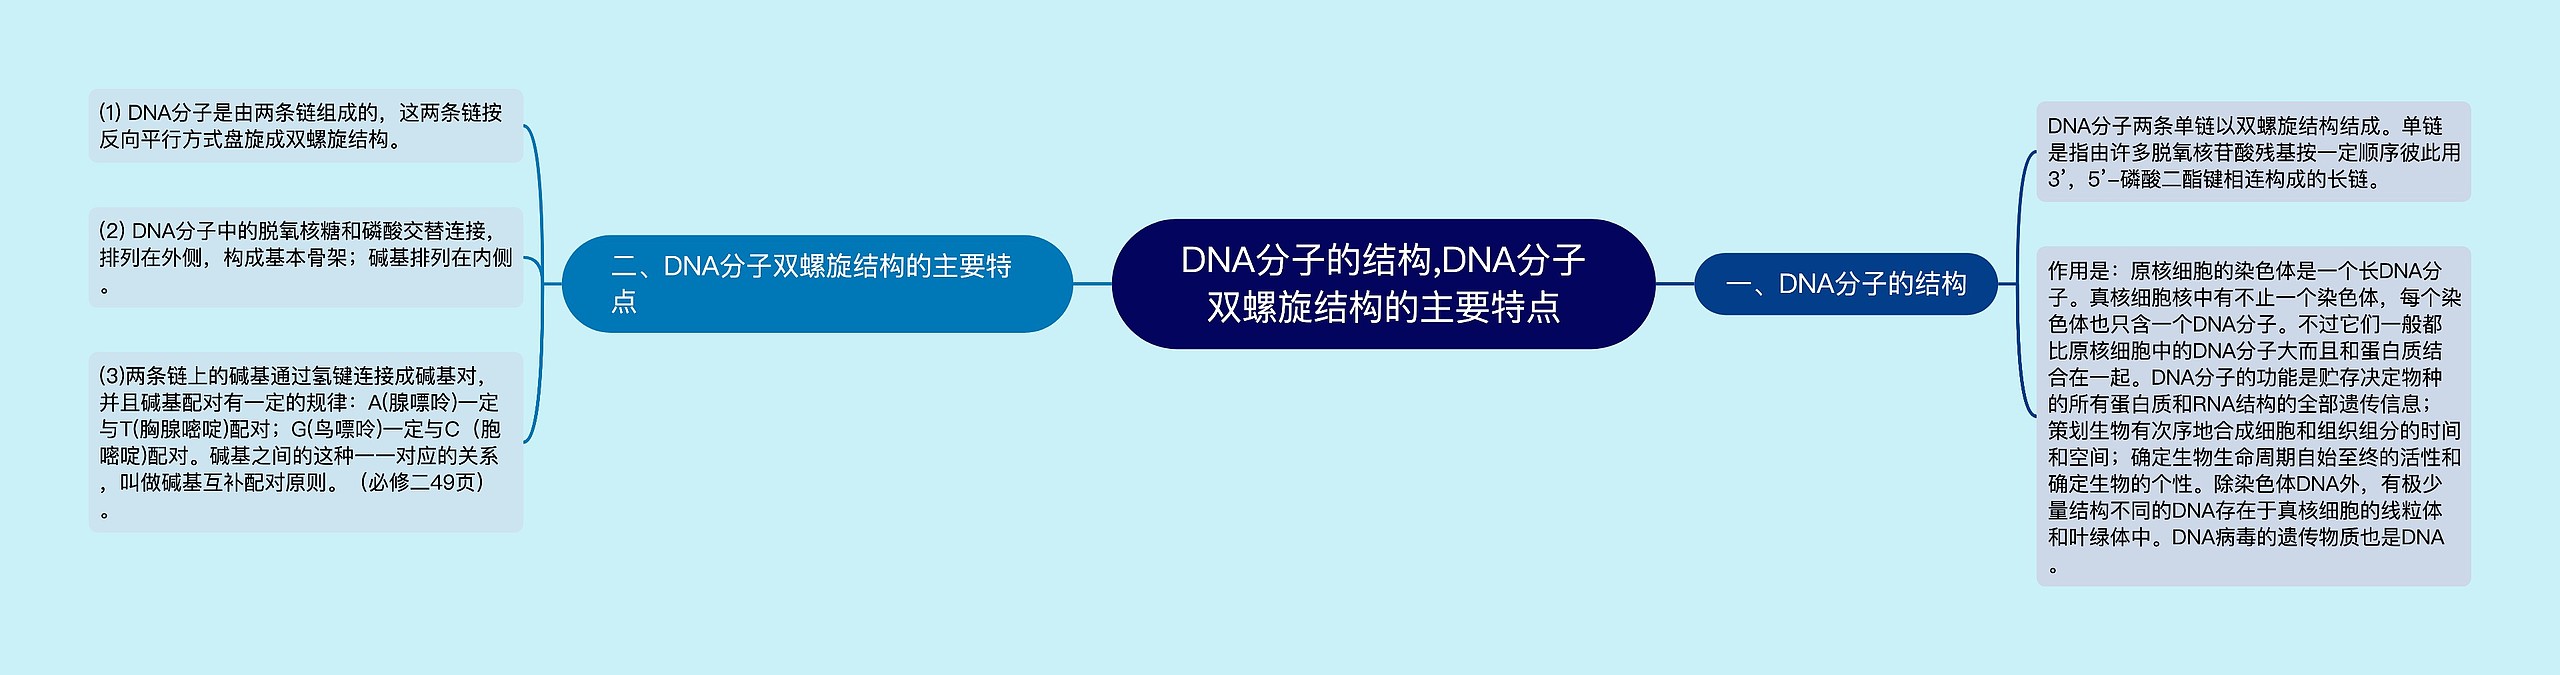 DNA分子的结构,DNA分子双螺旋结构的主要特点思维导图